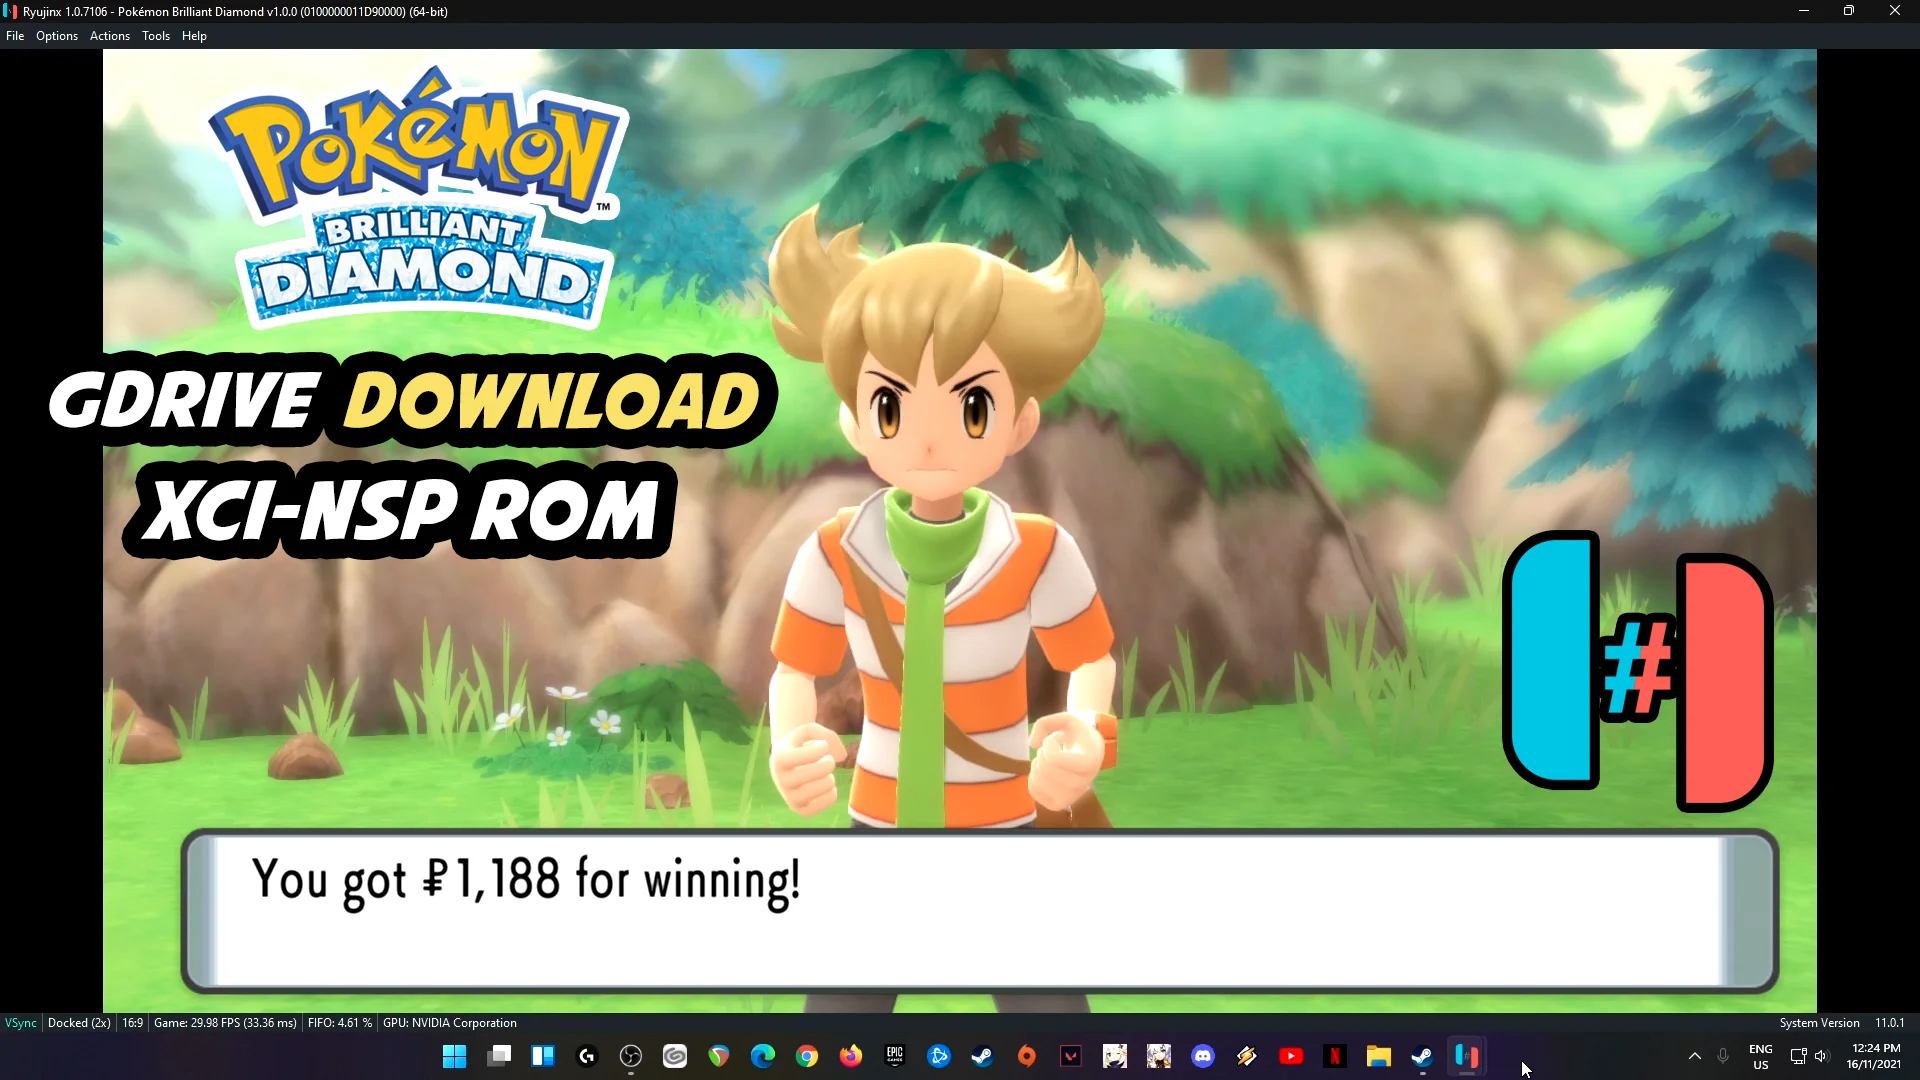 How To download Pokémon Brilliant Diamond APK Version On Android [NOV2021]  on Vimeo